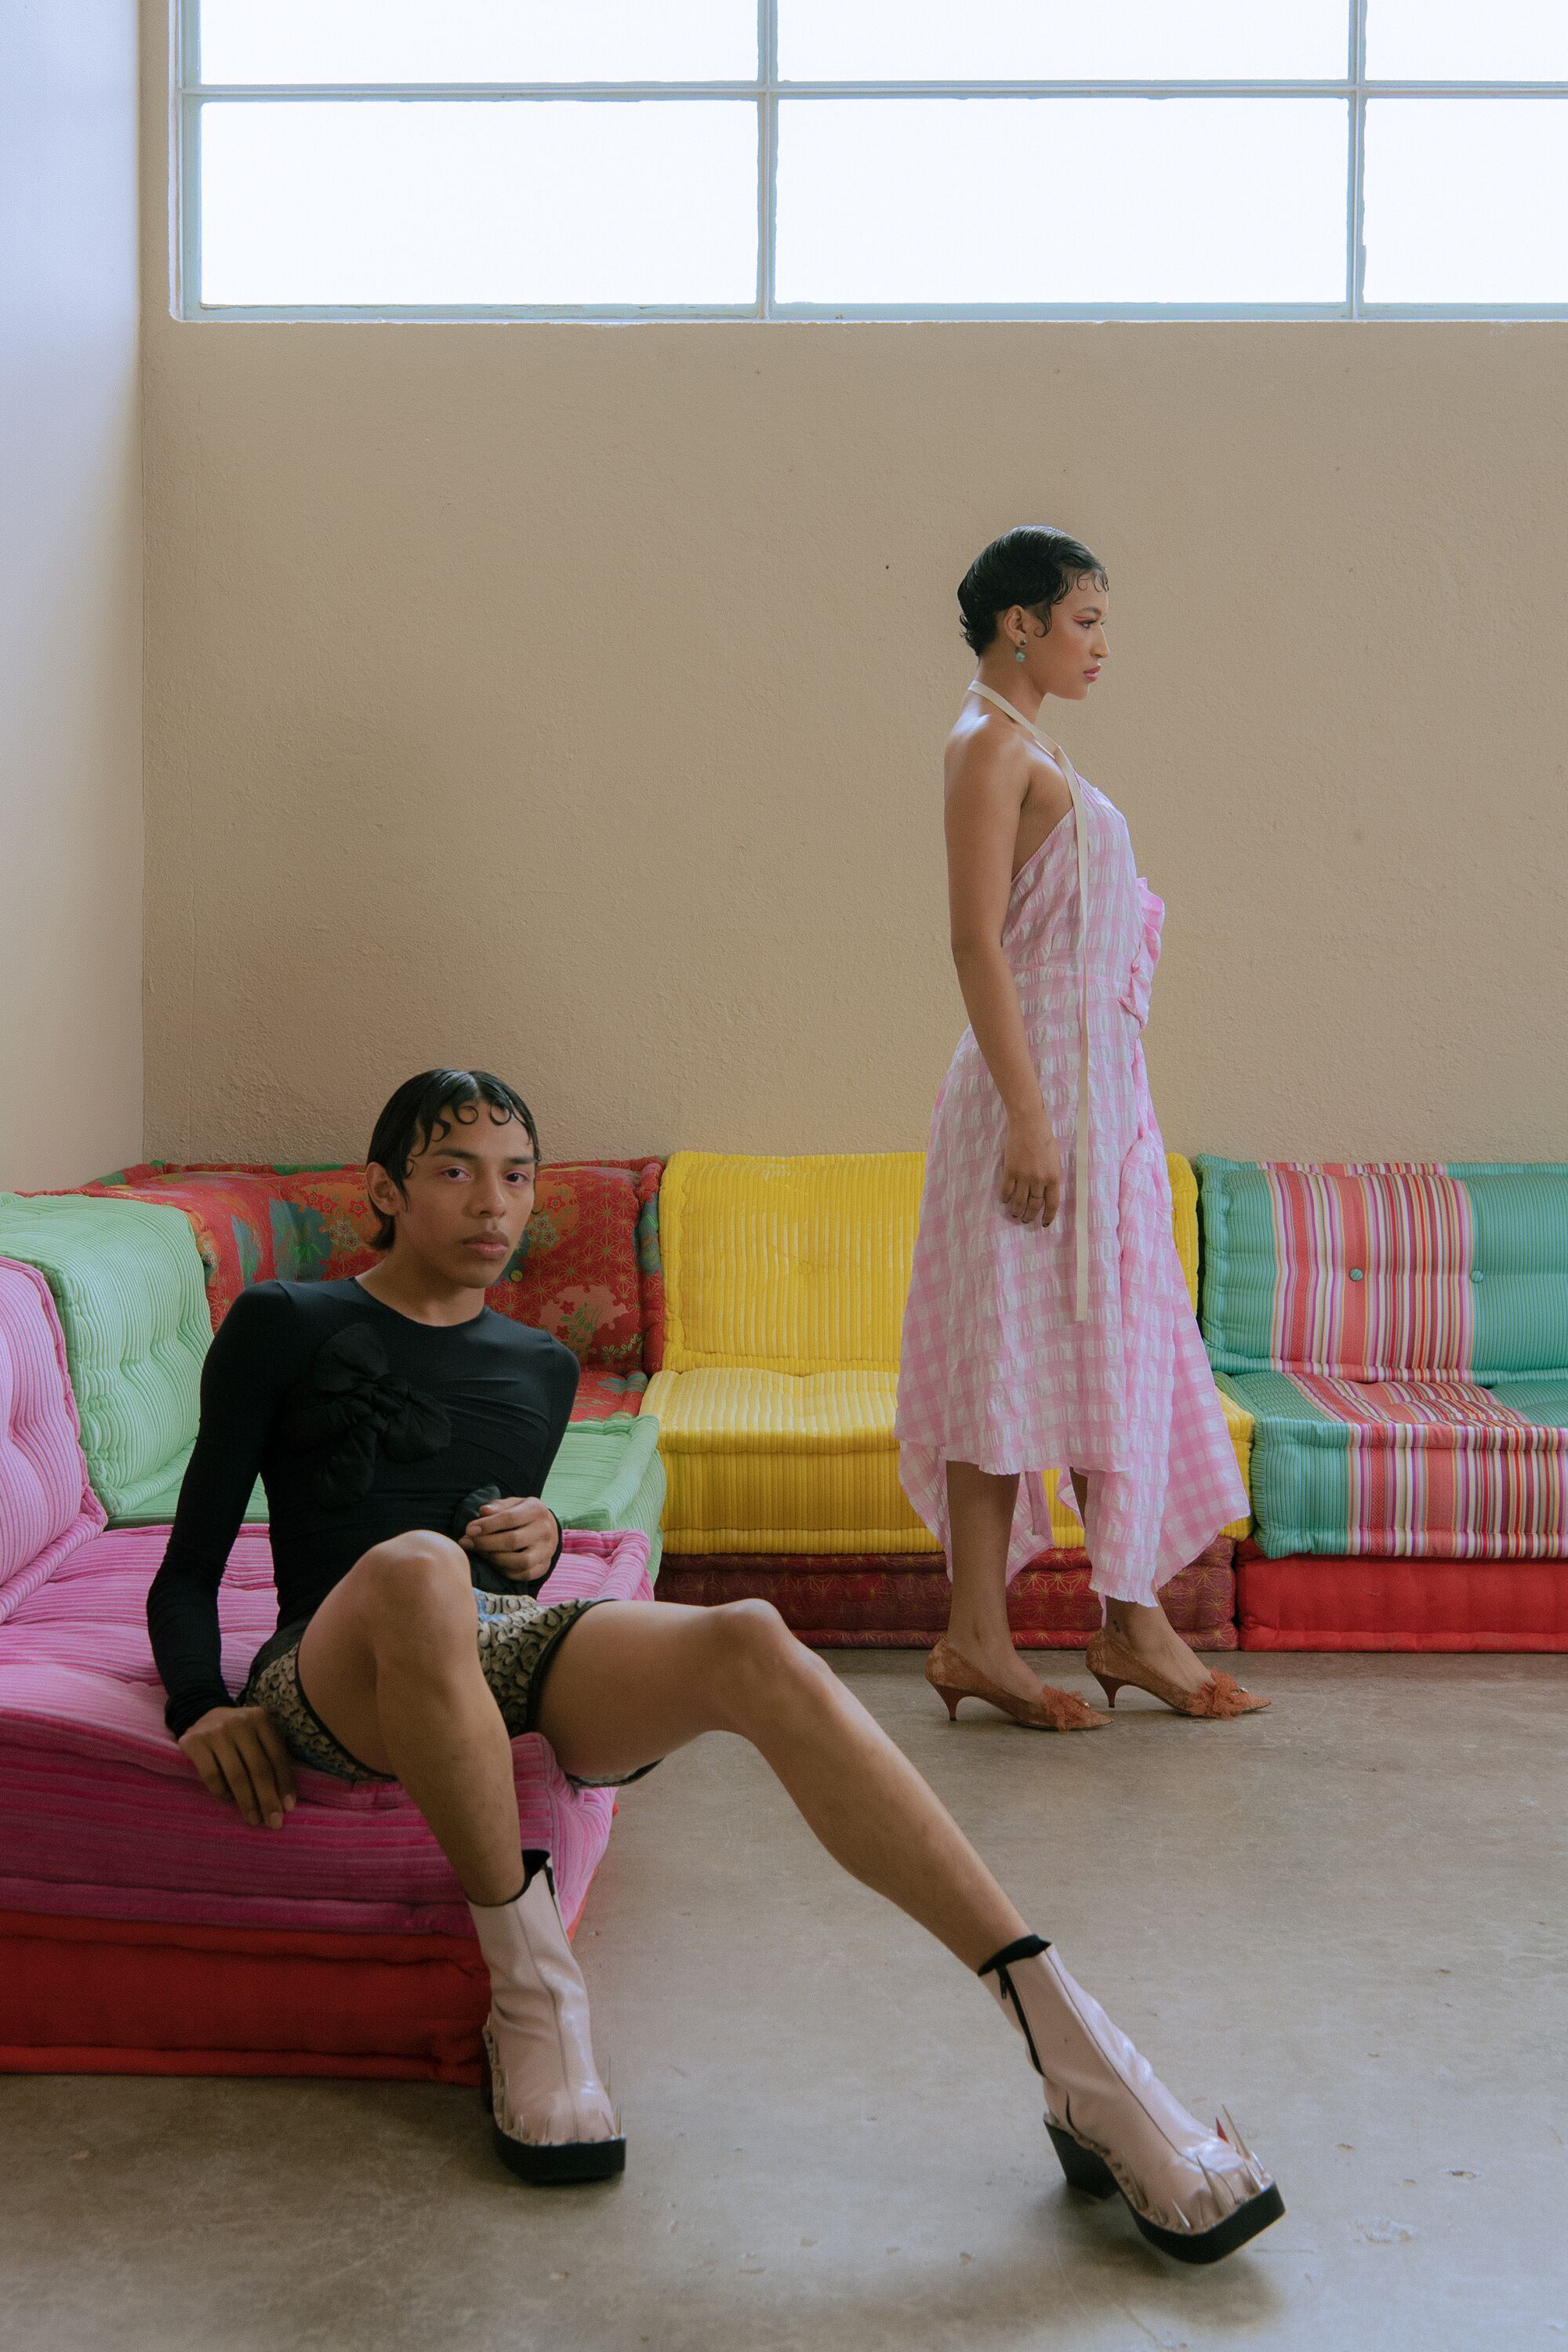 Una modella è seduta su un divano multicolore a forma di V, mentre un'altra è in piedi con un abito rosa.